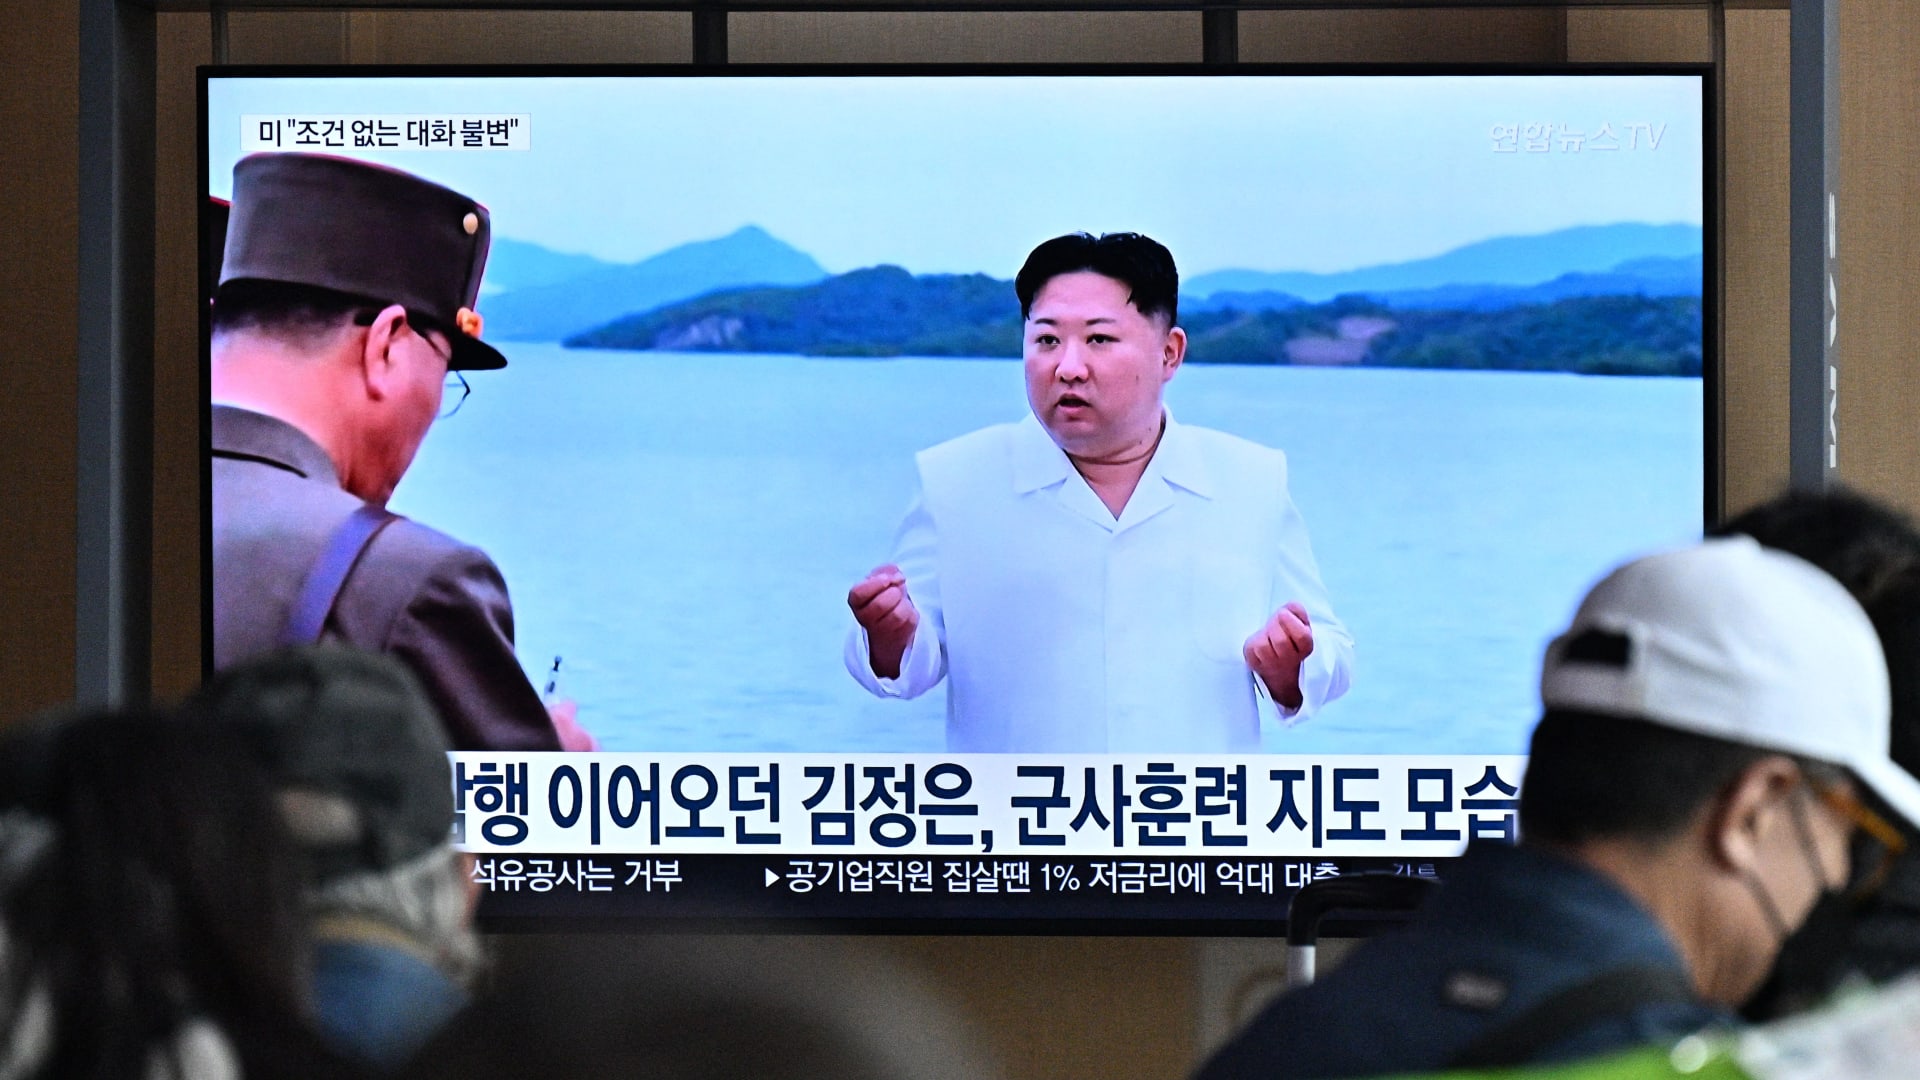 تلفزيون يعرض بثا إخباريا مع صورة للزعيم الكوري الشمالي كيم جونغ أون في محطة للسكك الحديدية بسيول